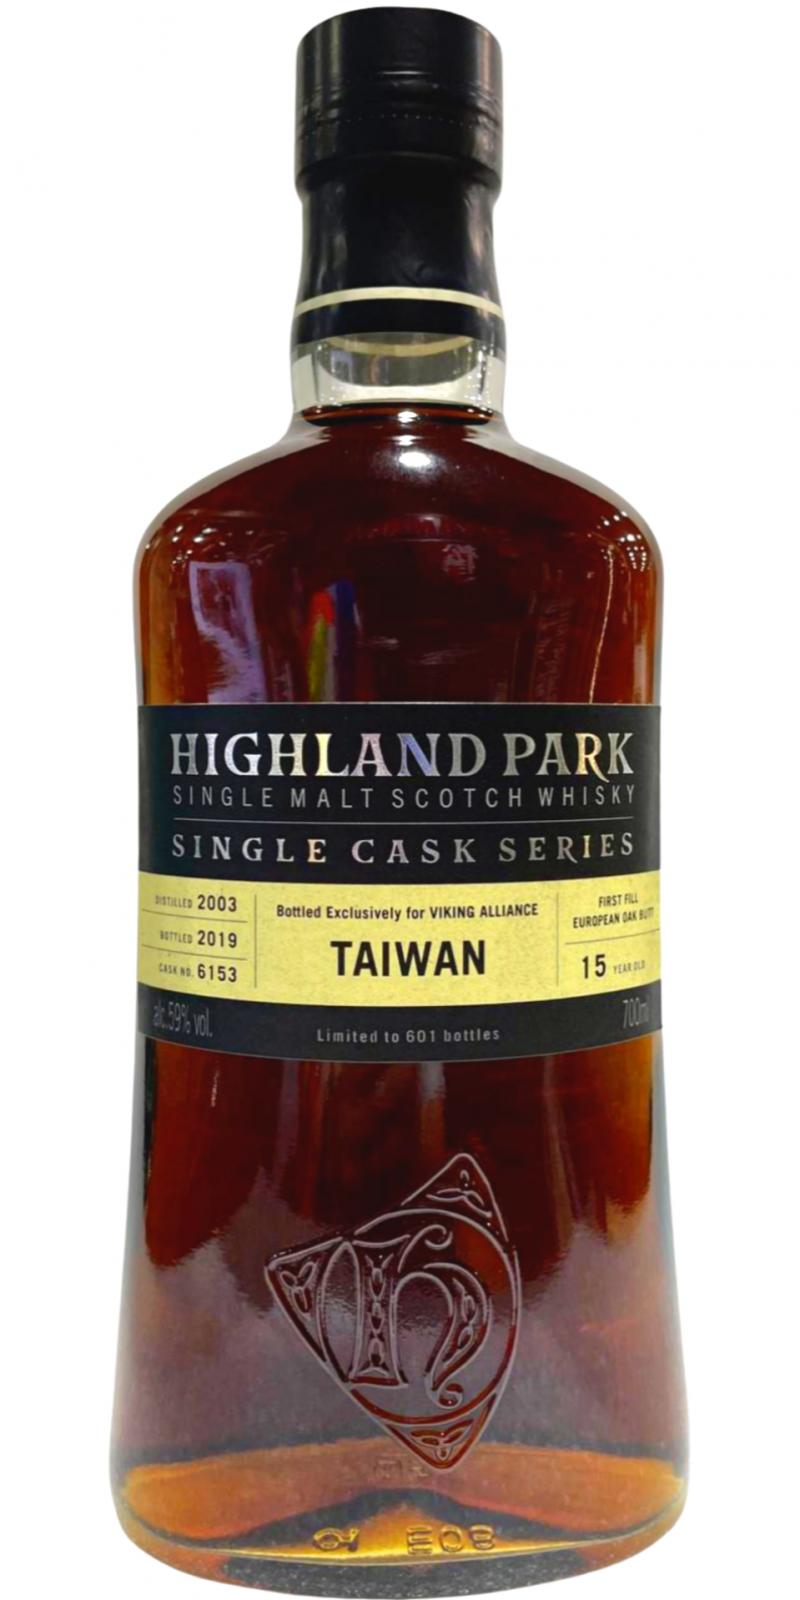 Highland Park 2003 Single Cask Series 1st Fill European Oak Butt #6153 Viking Alliance Taiwan 59% 700ml